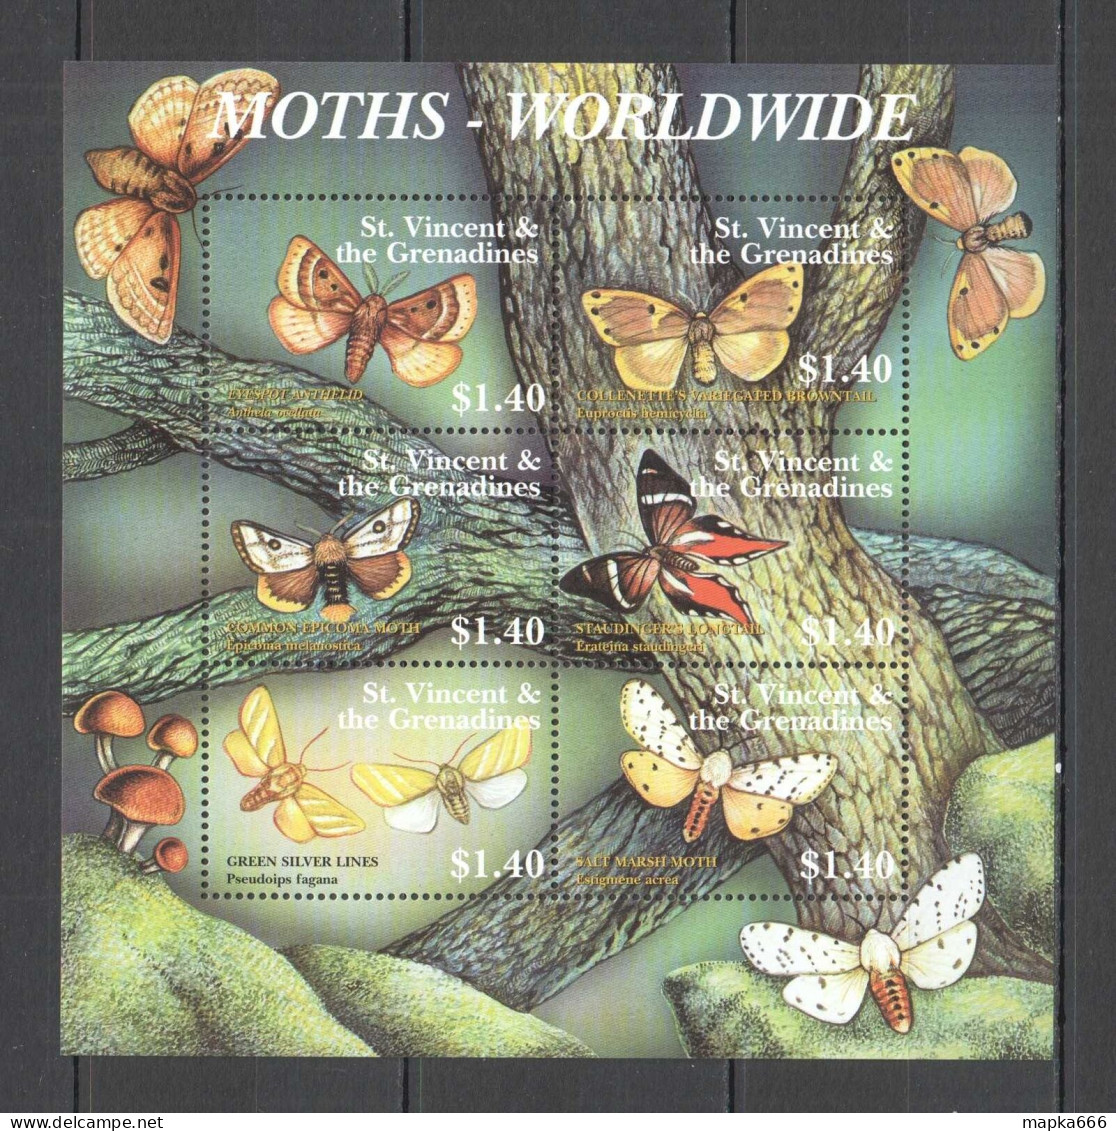 B1245 St. Vincent Butterflies Moths Worldwide Flora & Fauna Kb Mnh - Schmetterlinge